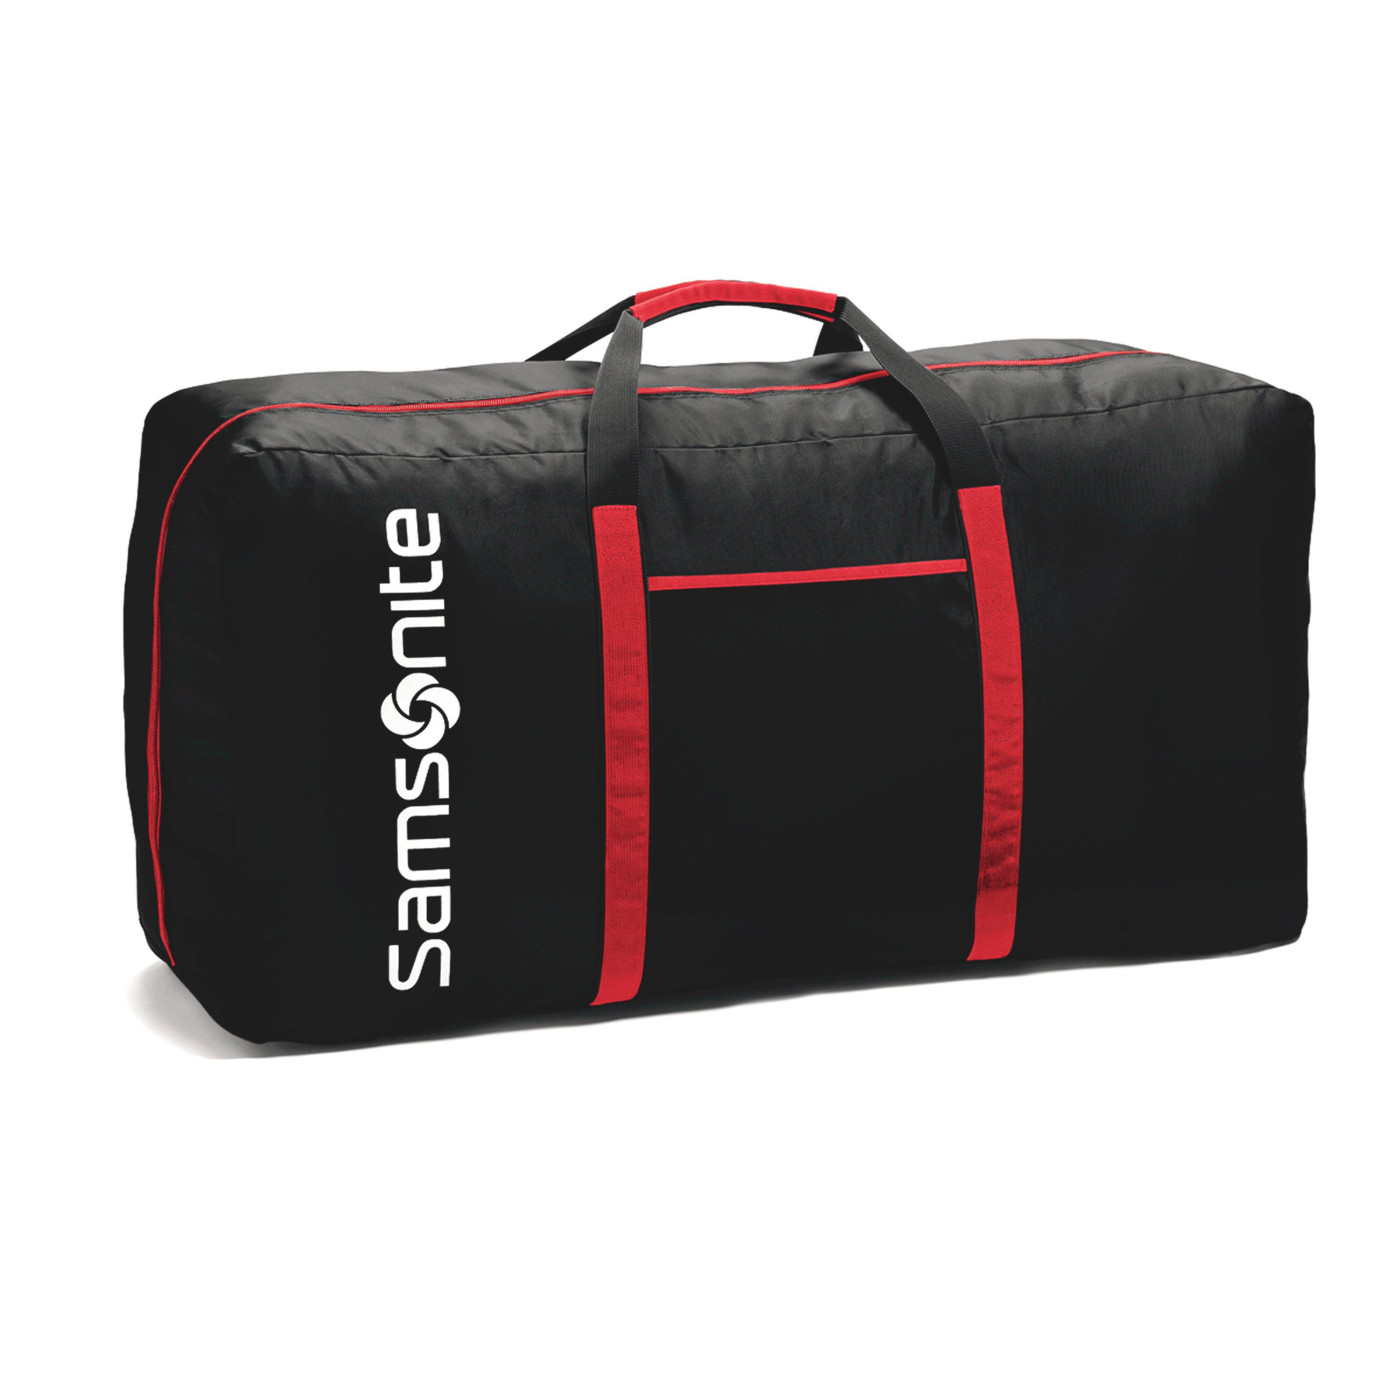 Samsonite 101801 - Tote-A-Ton Duffel Bag